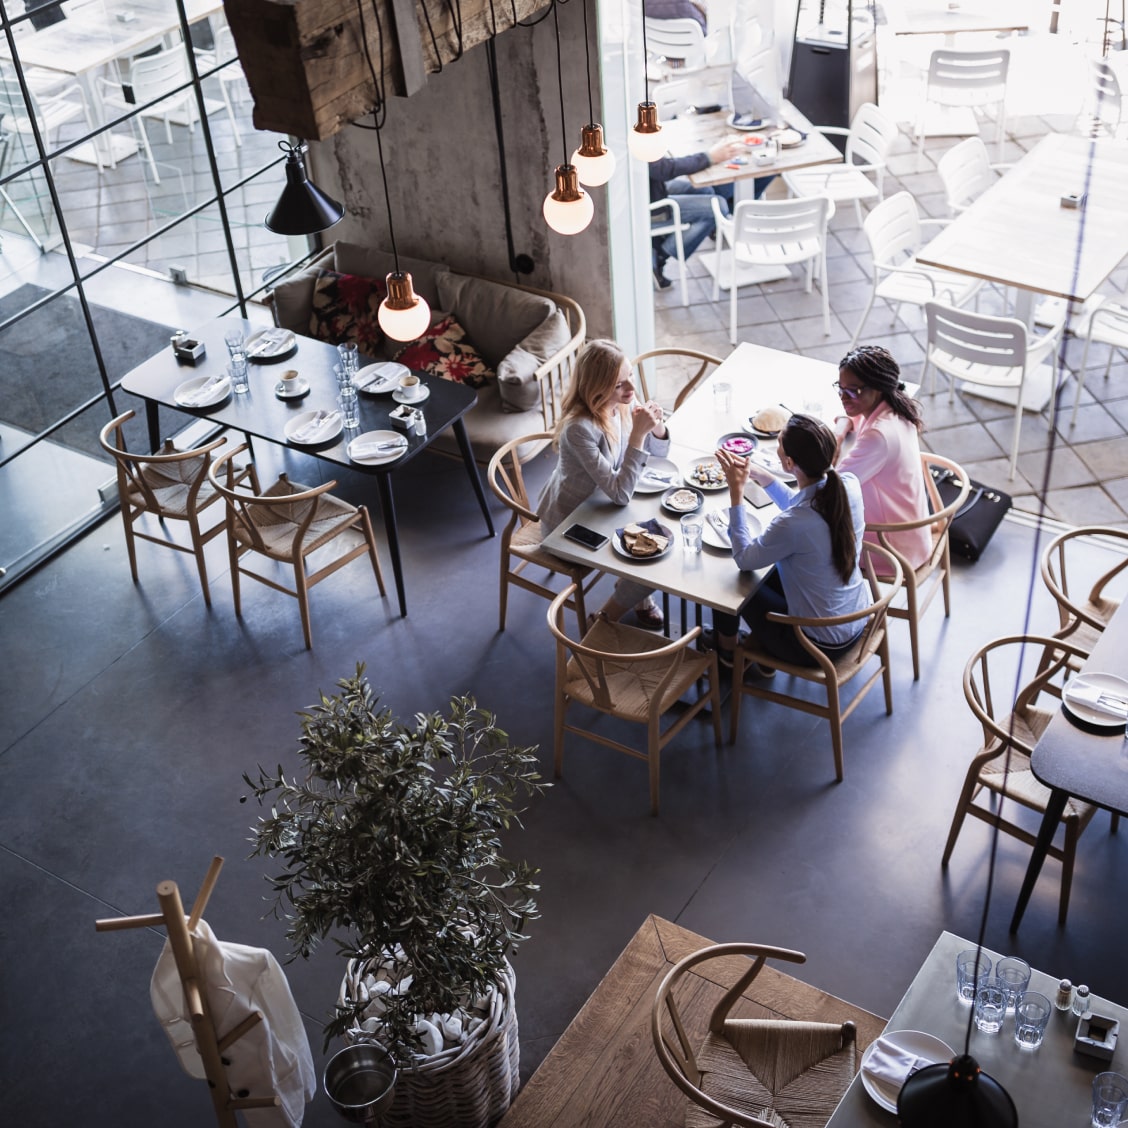 Restaurant von innen mit Menschen an Tisch sitzend